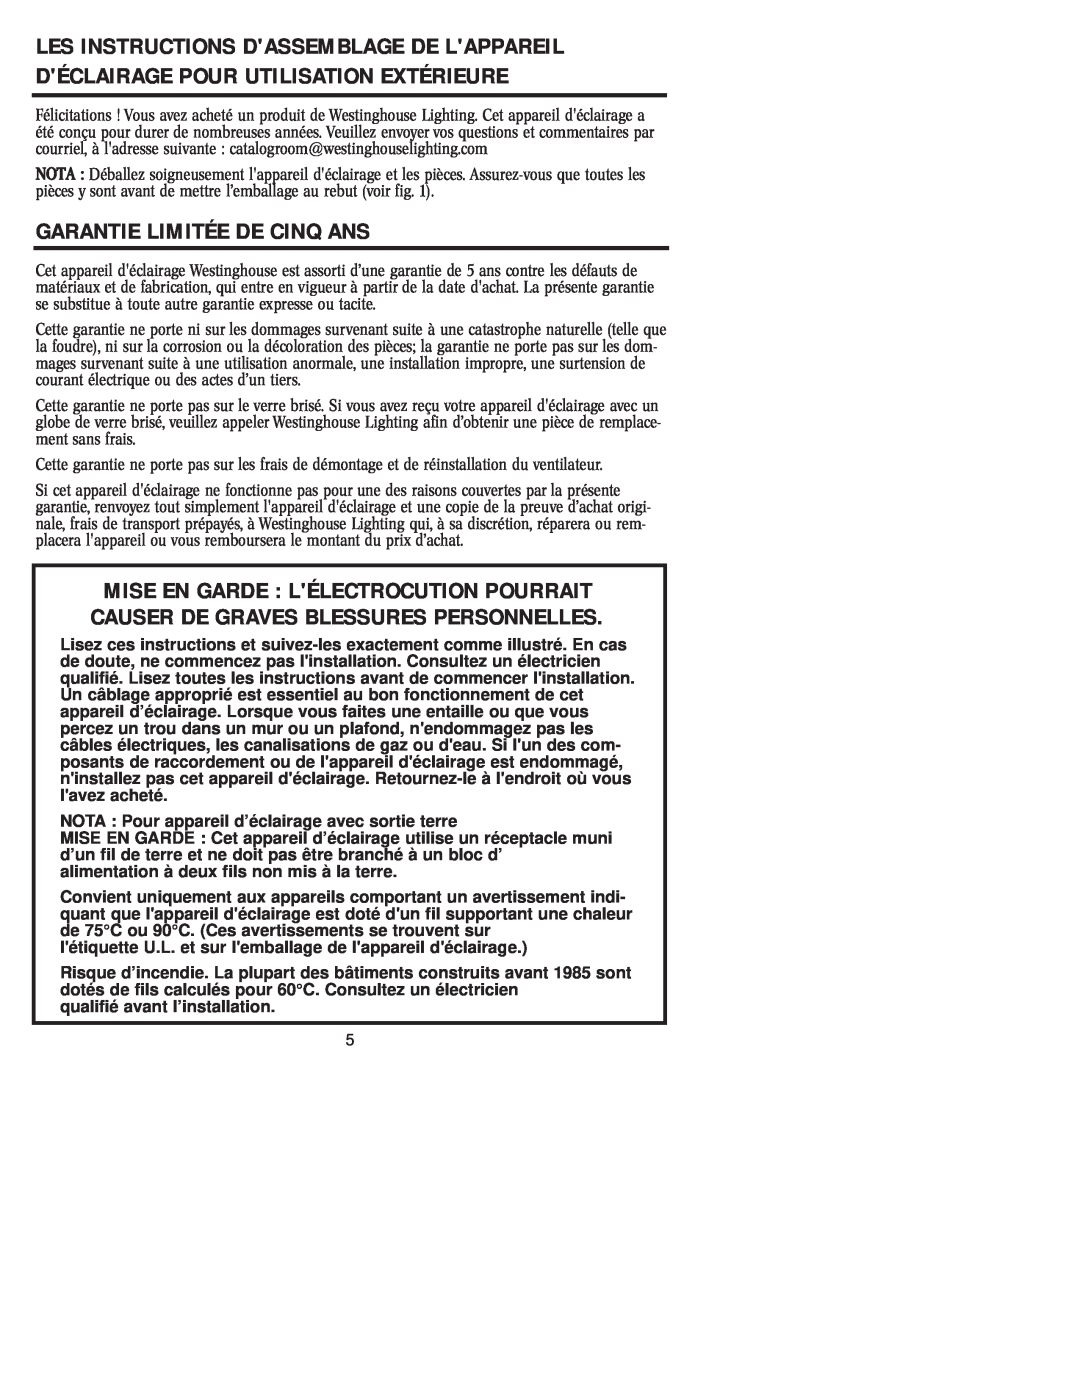 Westinghouse W-007 owner manual Garantie Limitée De Cinq Ans 